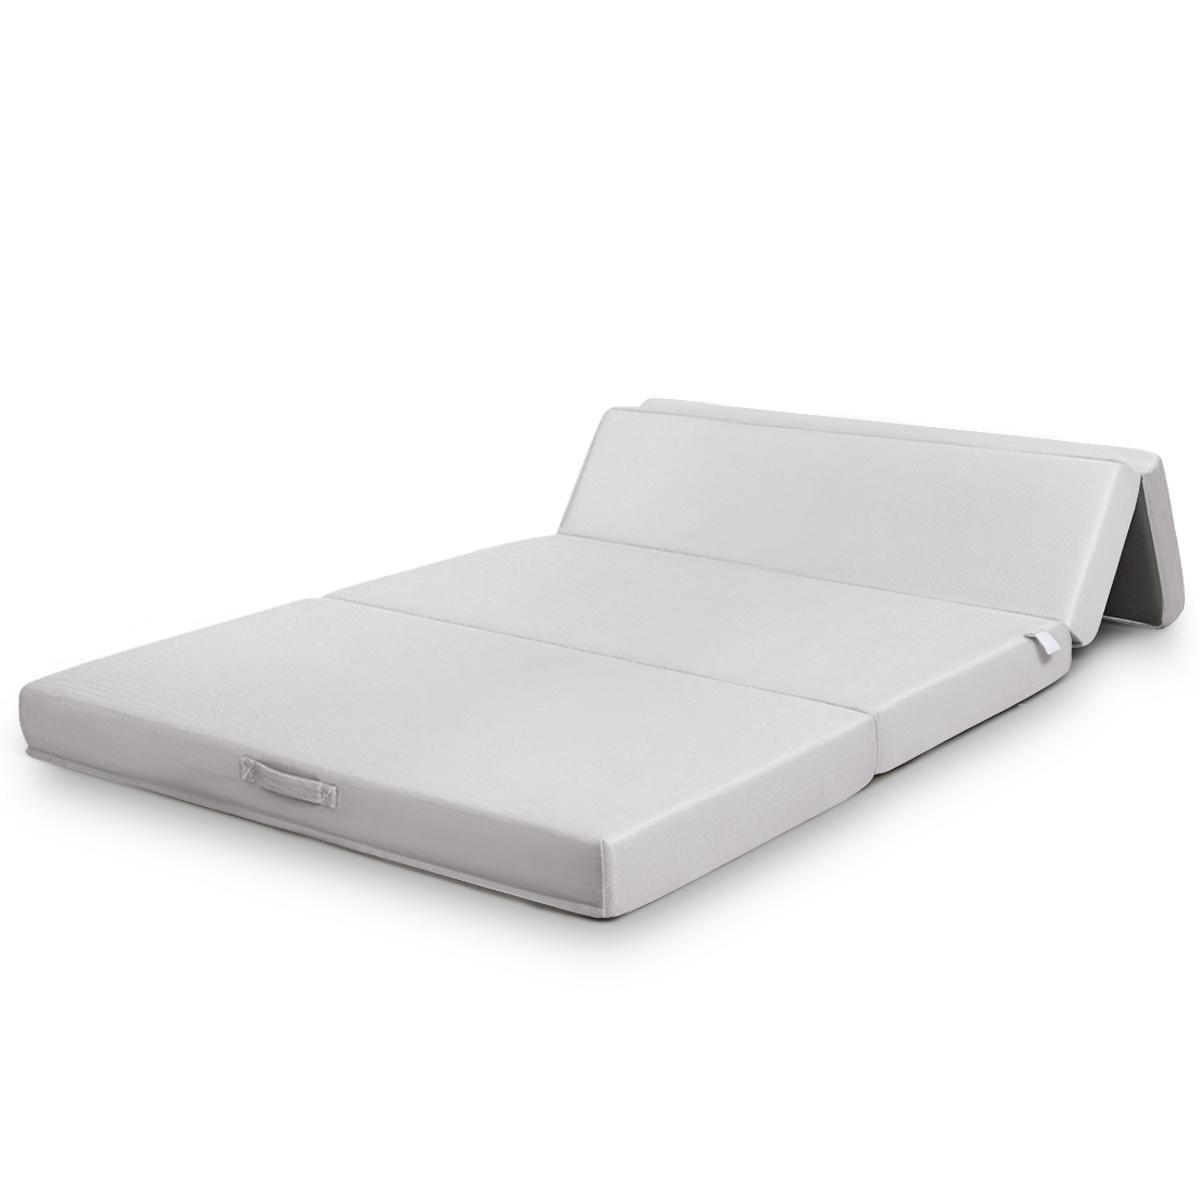 Futon Bed Guest Portable Foam Fold Best Choice Folding Mattress Queen Sofa Cot 